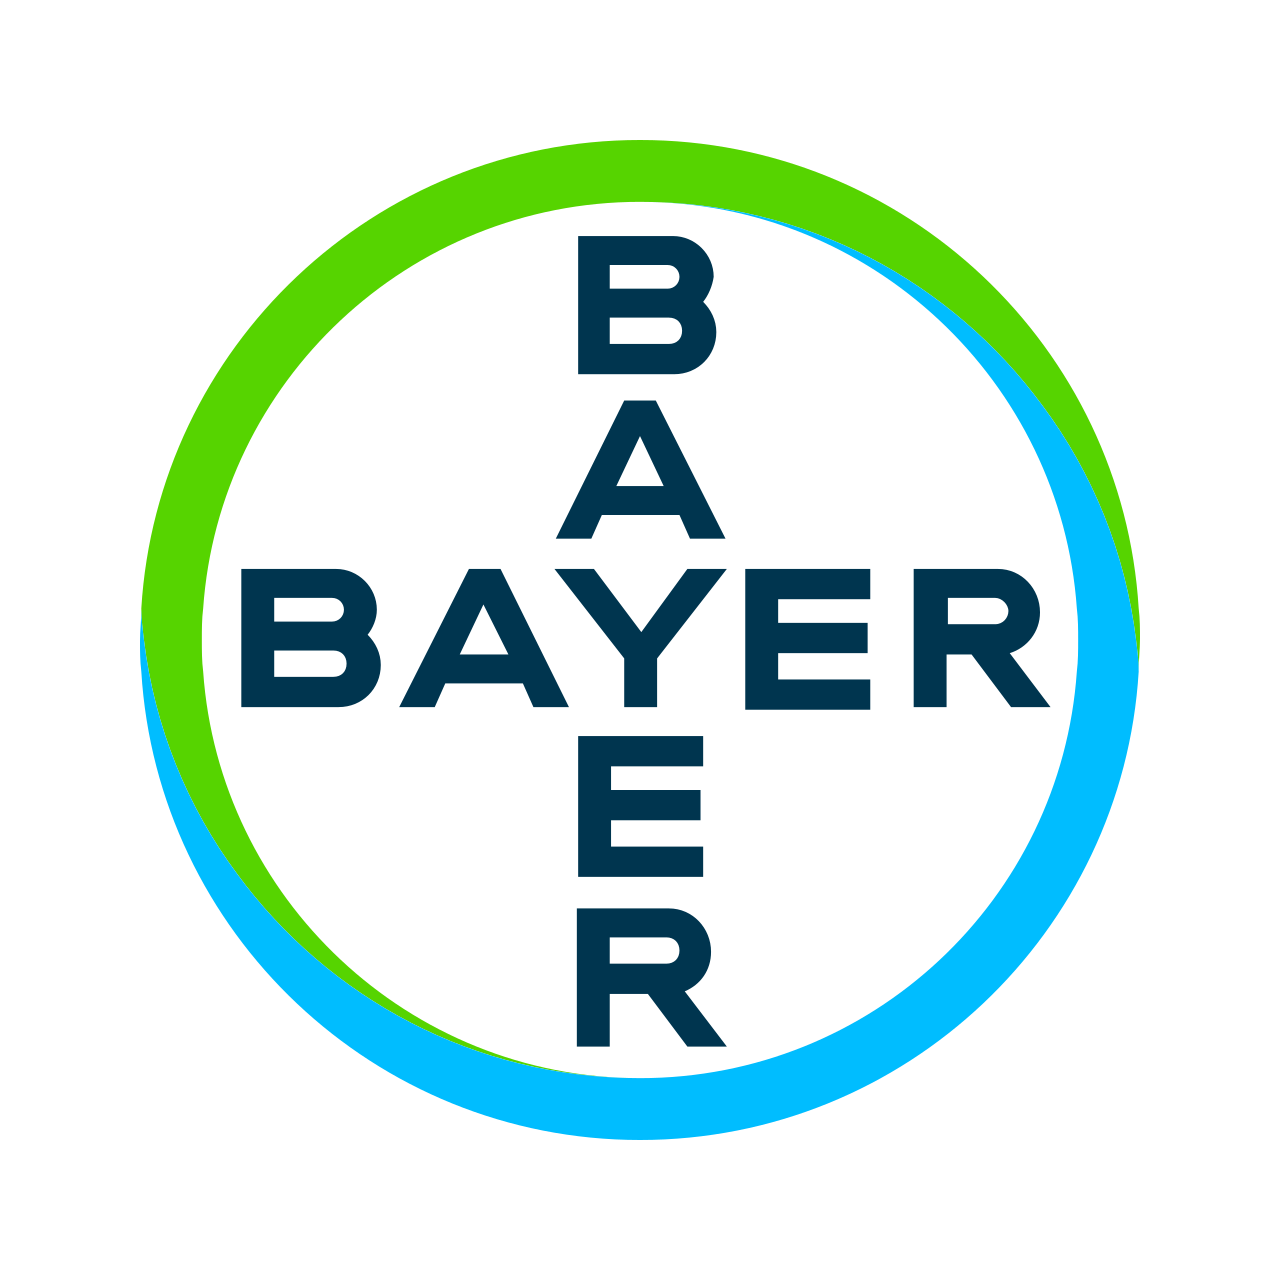 bayer-seeklogo.com